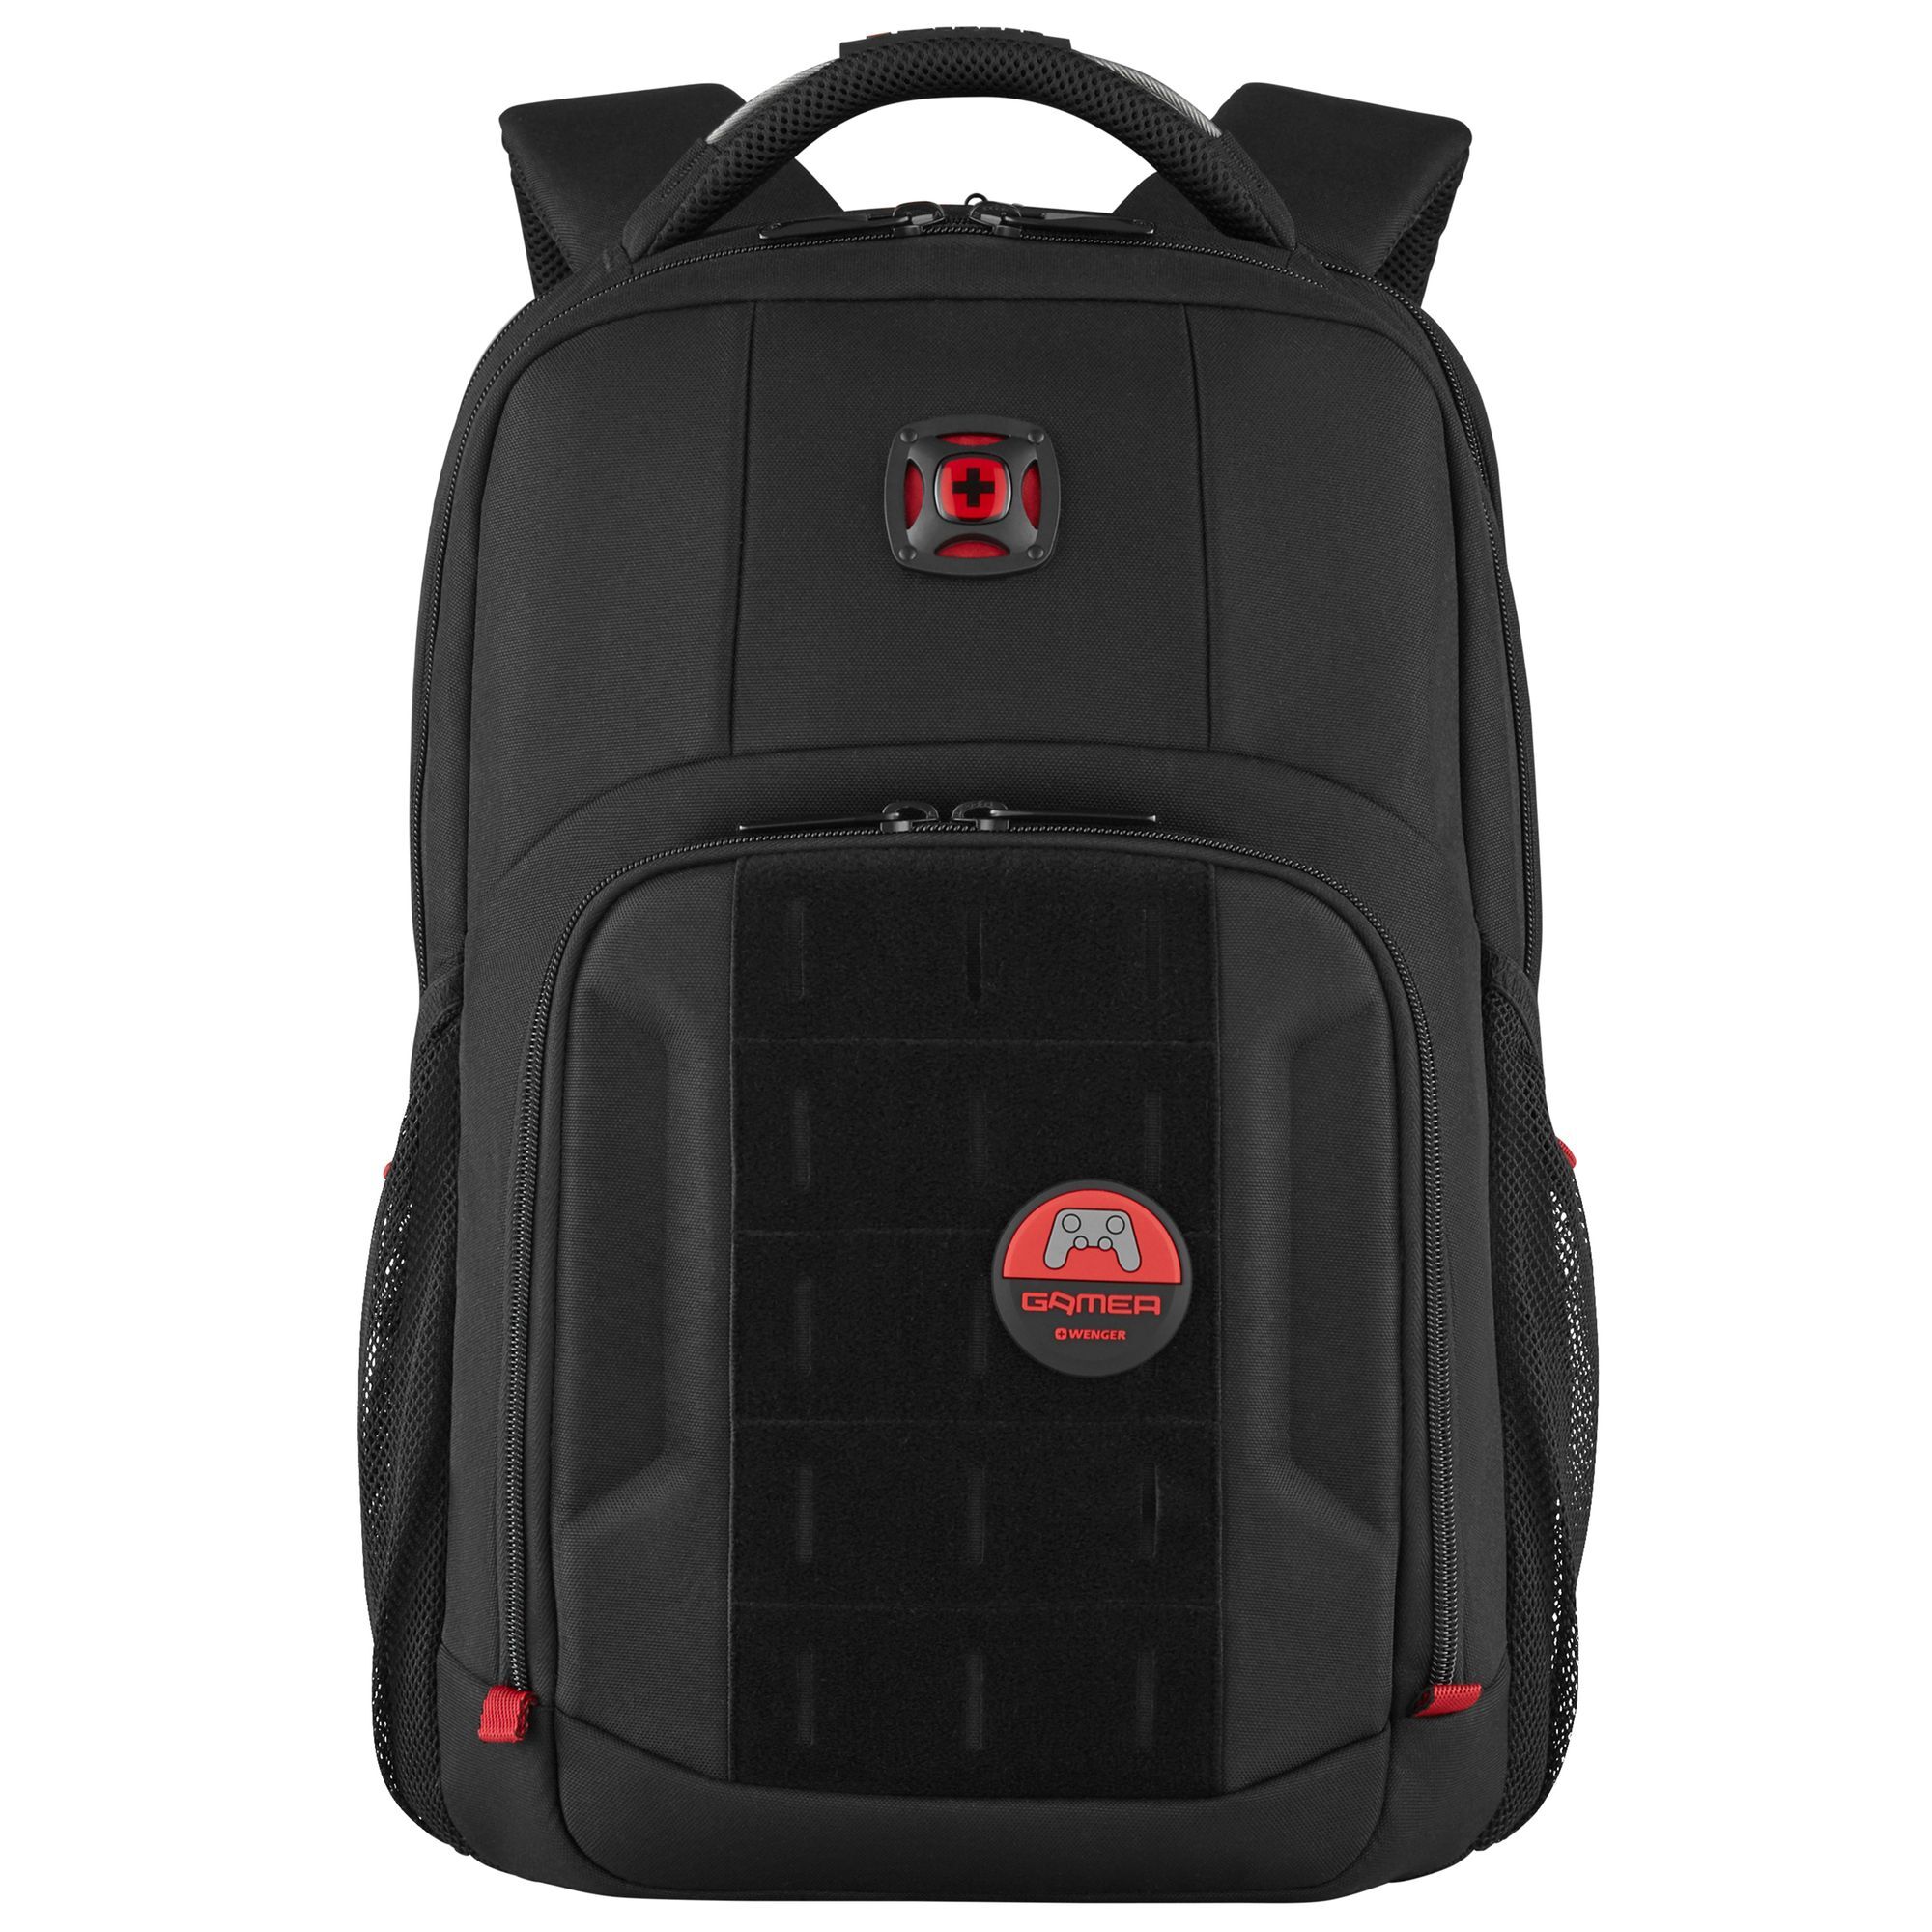 Рюкзак Wenger PlayerMode 46 cm Laptopfach, черный рюкзак wenger reload 14 42 cm laptopfach черный